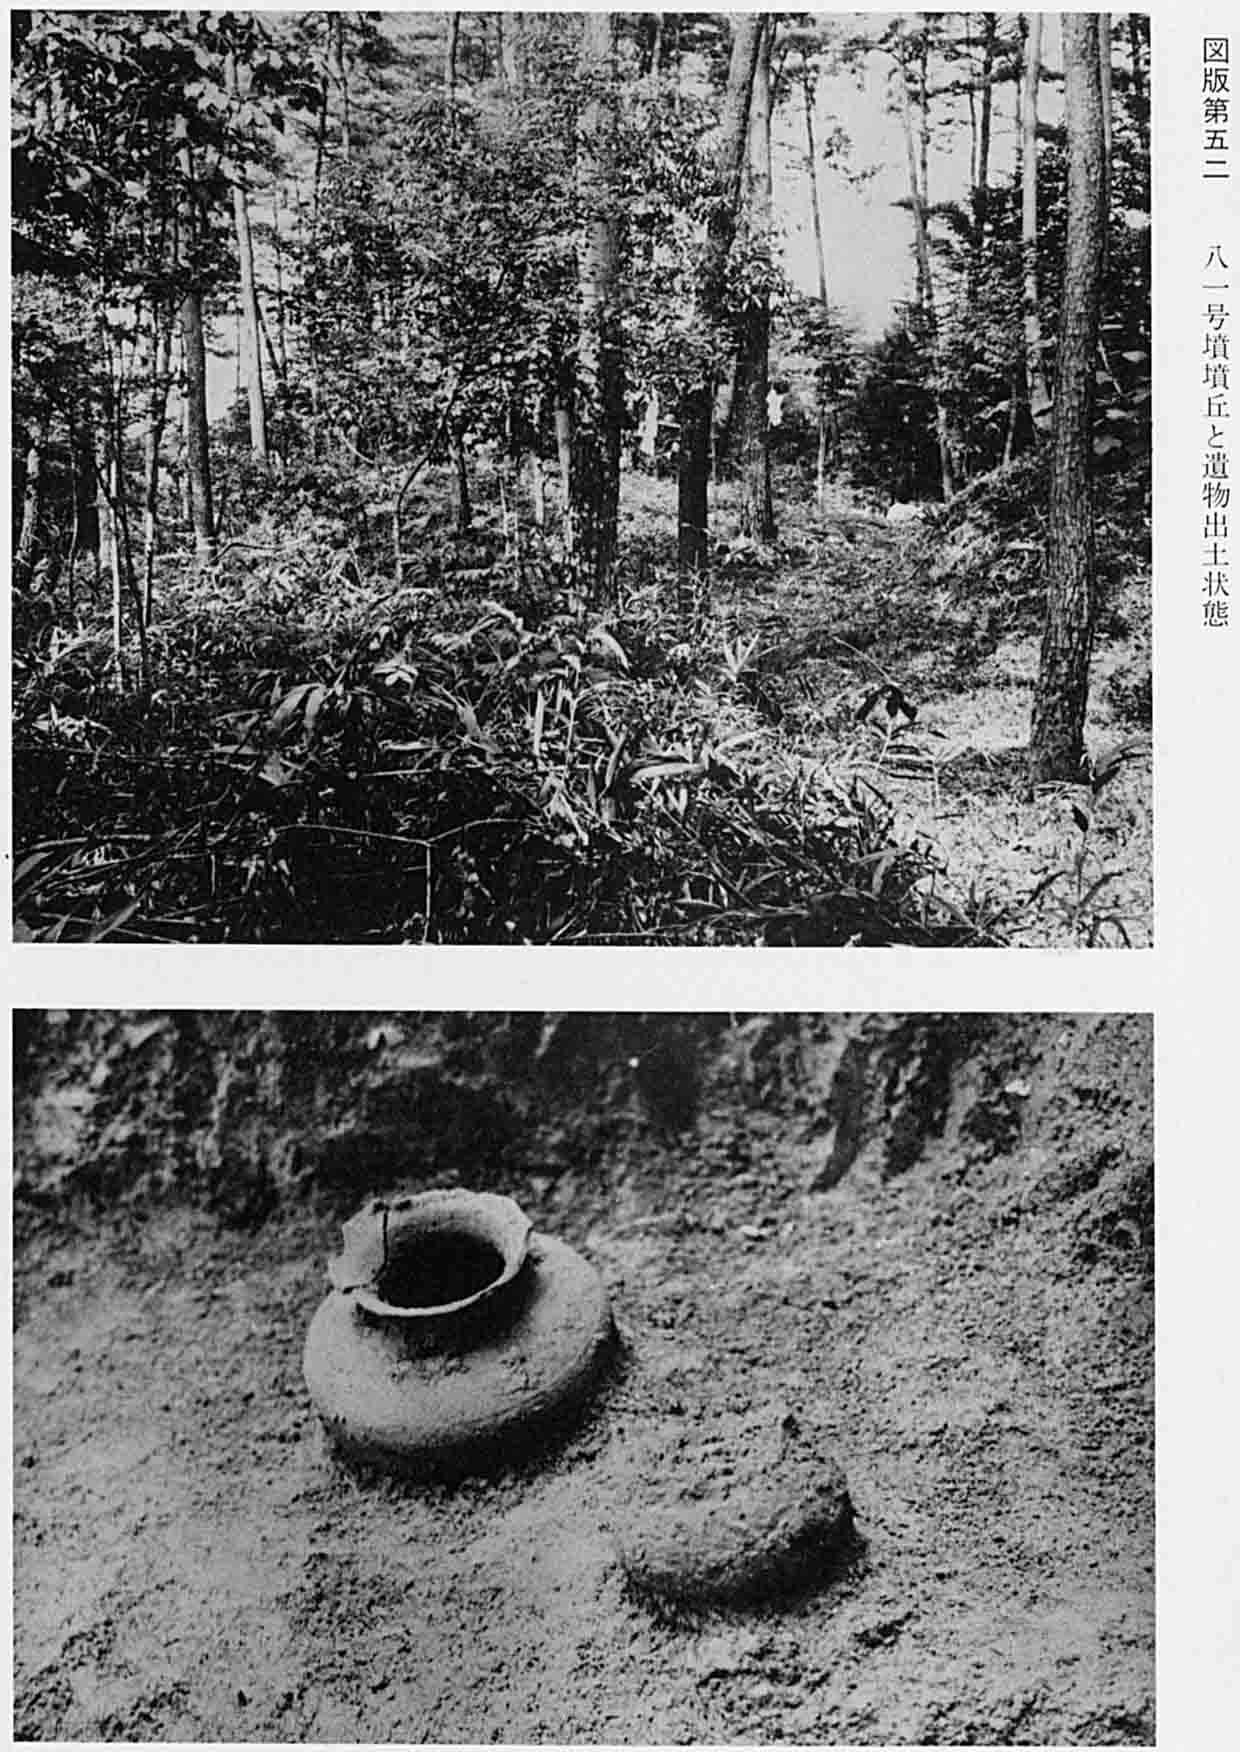 木々が林立している古墳丘と、そこから出土された壺のモノクロ写真（図版52 81号墳墳丘と遺物出土状態）